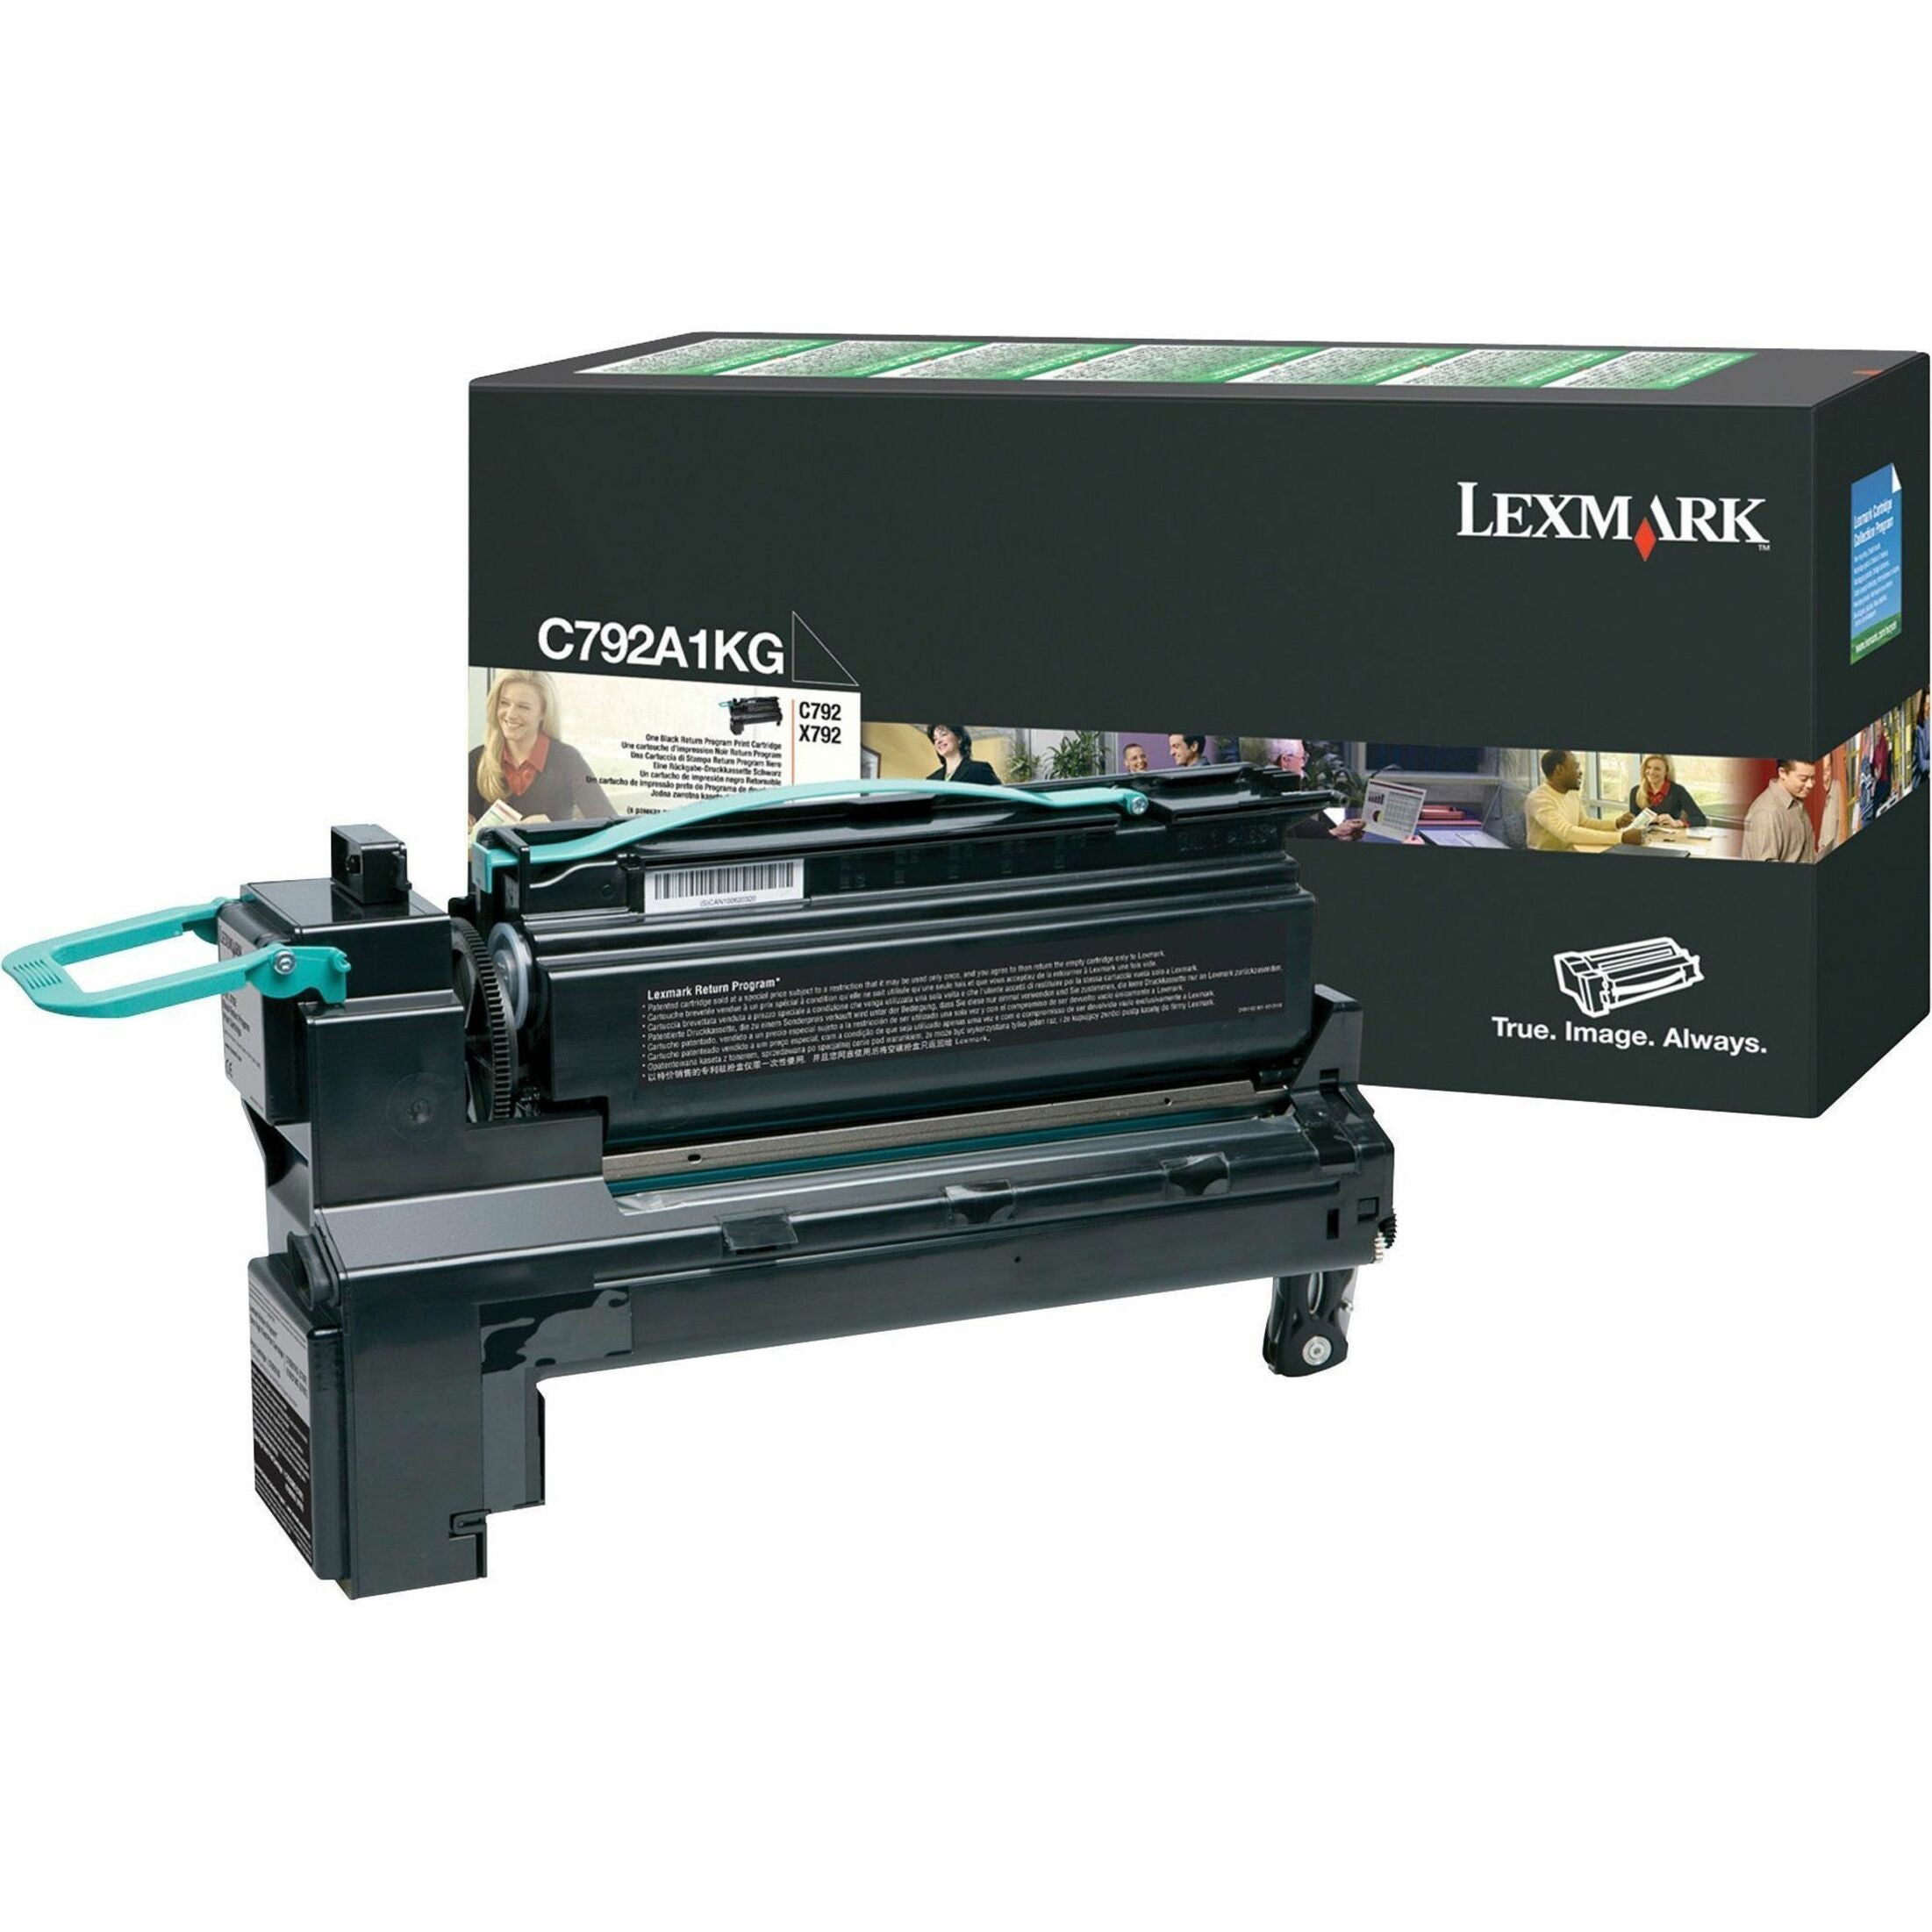 Lexmark C792A1KG Toner Cartridge - Laser - 6000 Pages, Black